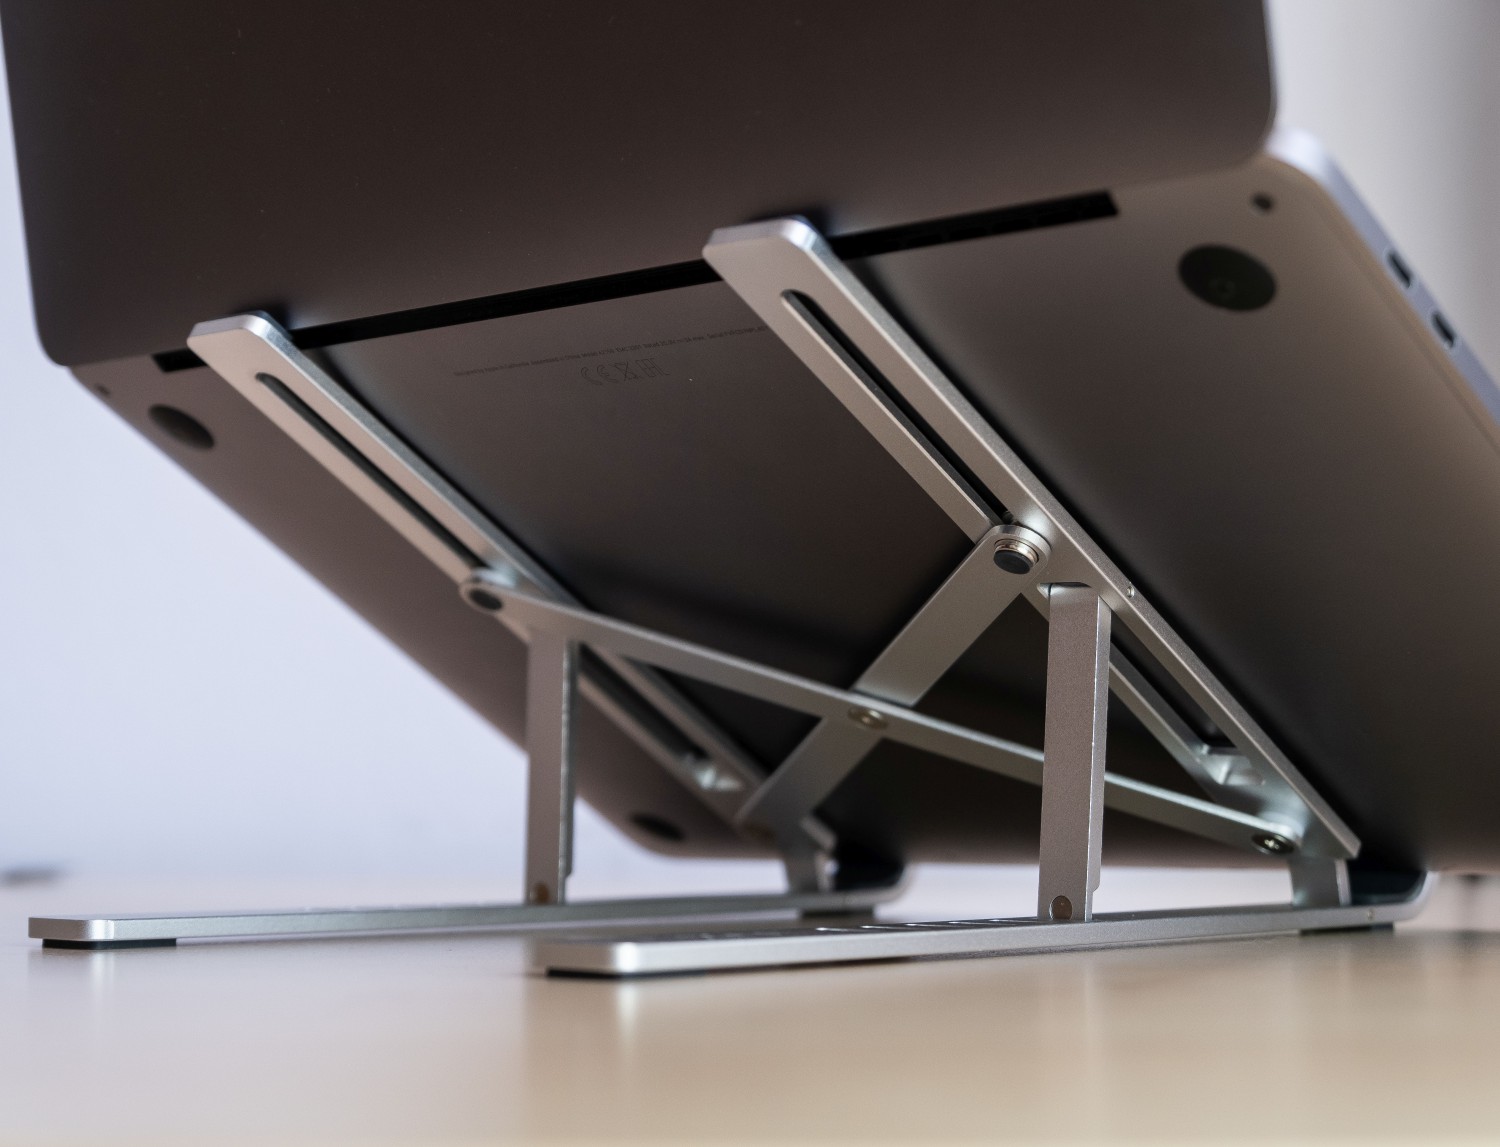 Skládací hliníkový stojánek FIXED Frame Fold pro notebooky a tablety, stříbrný